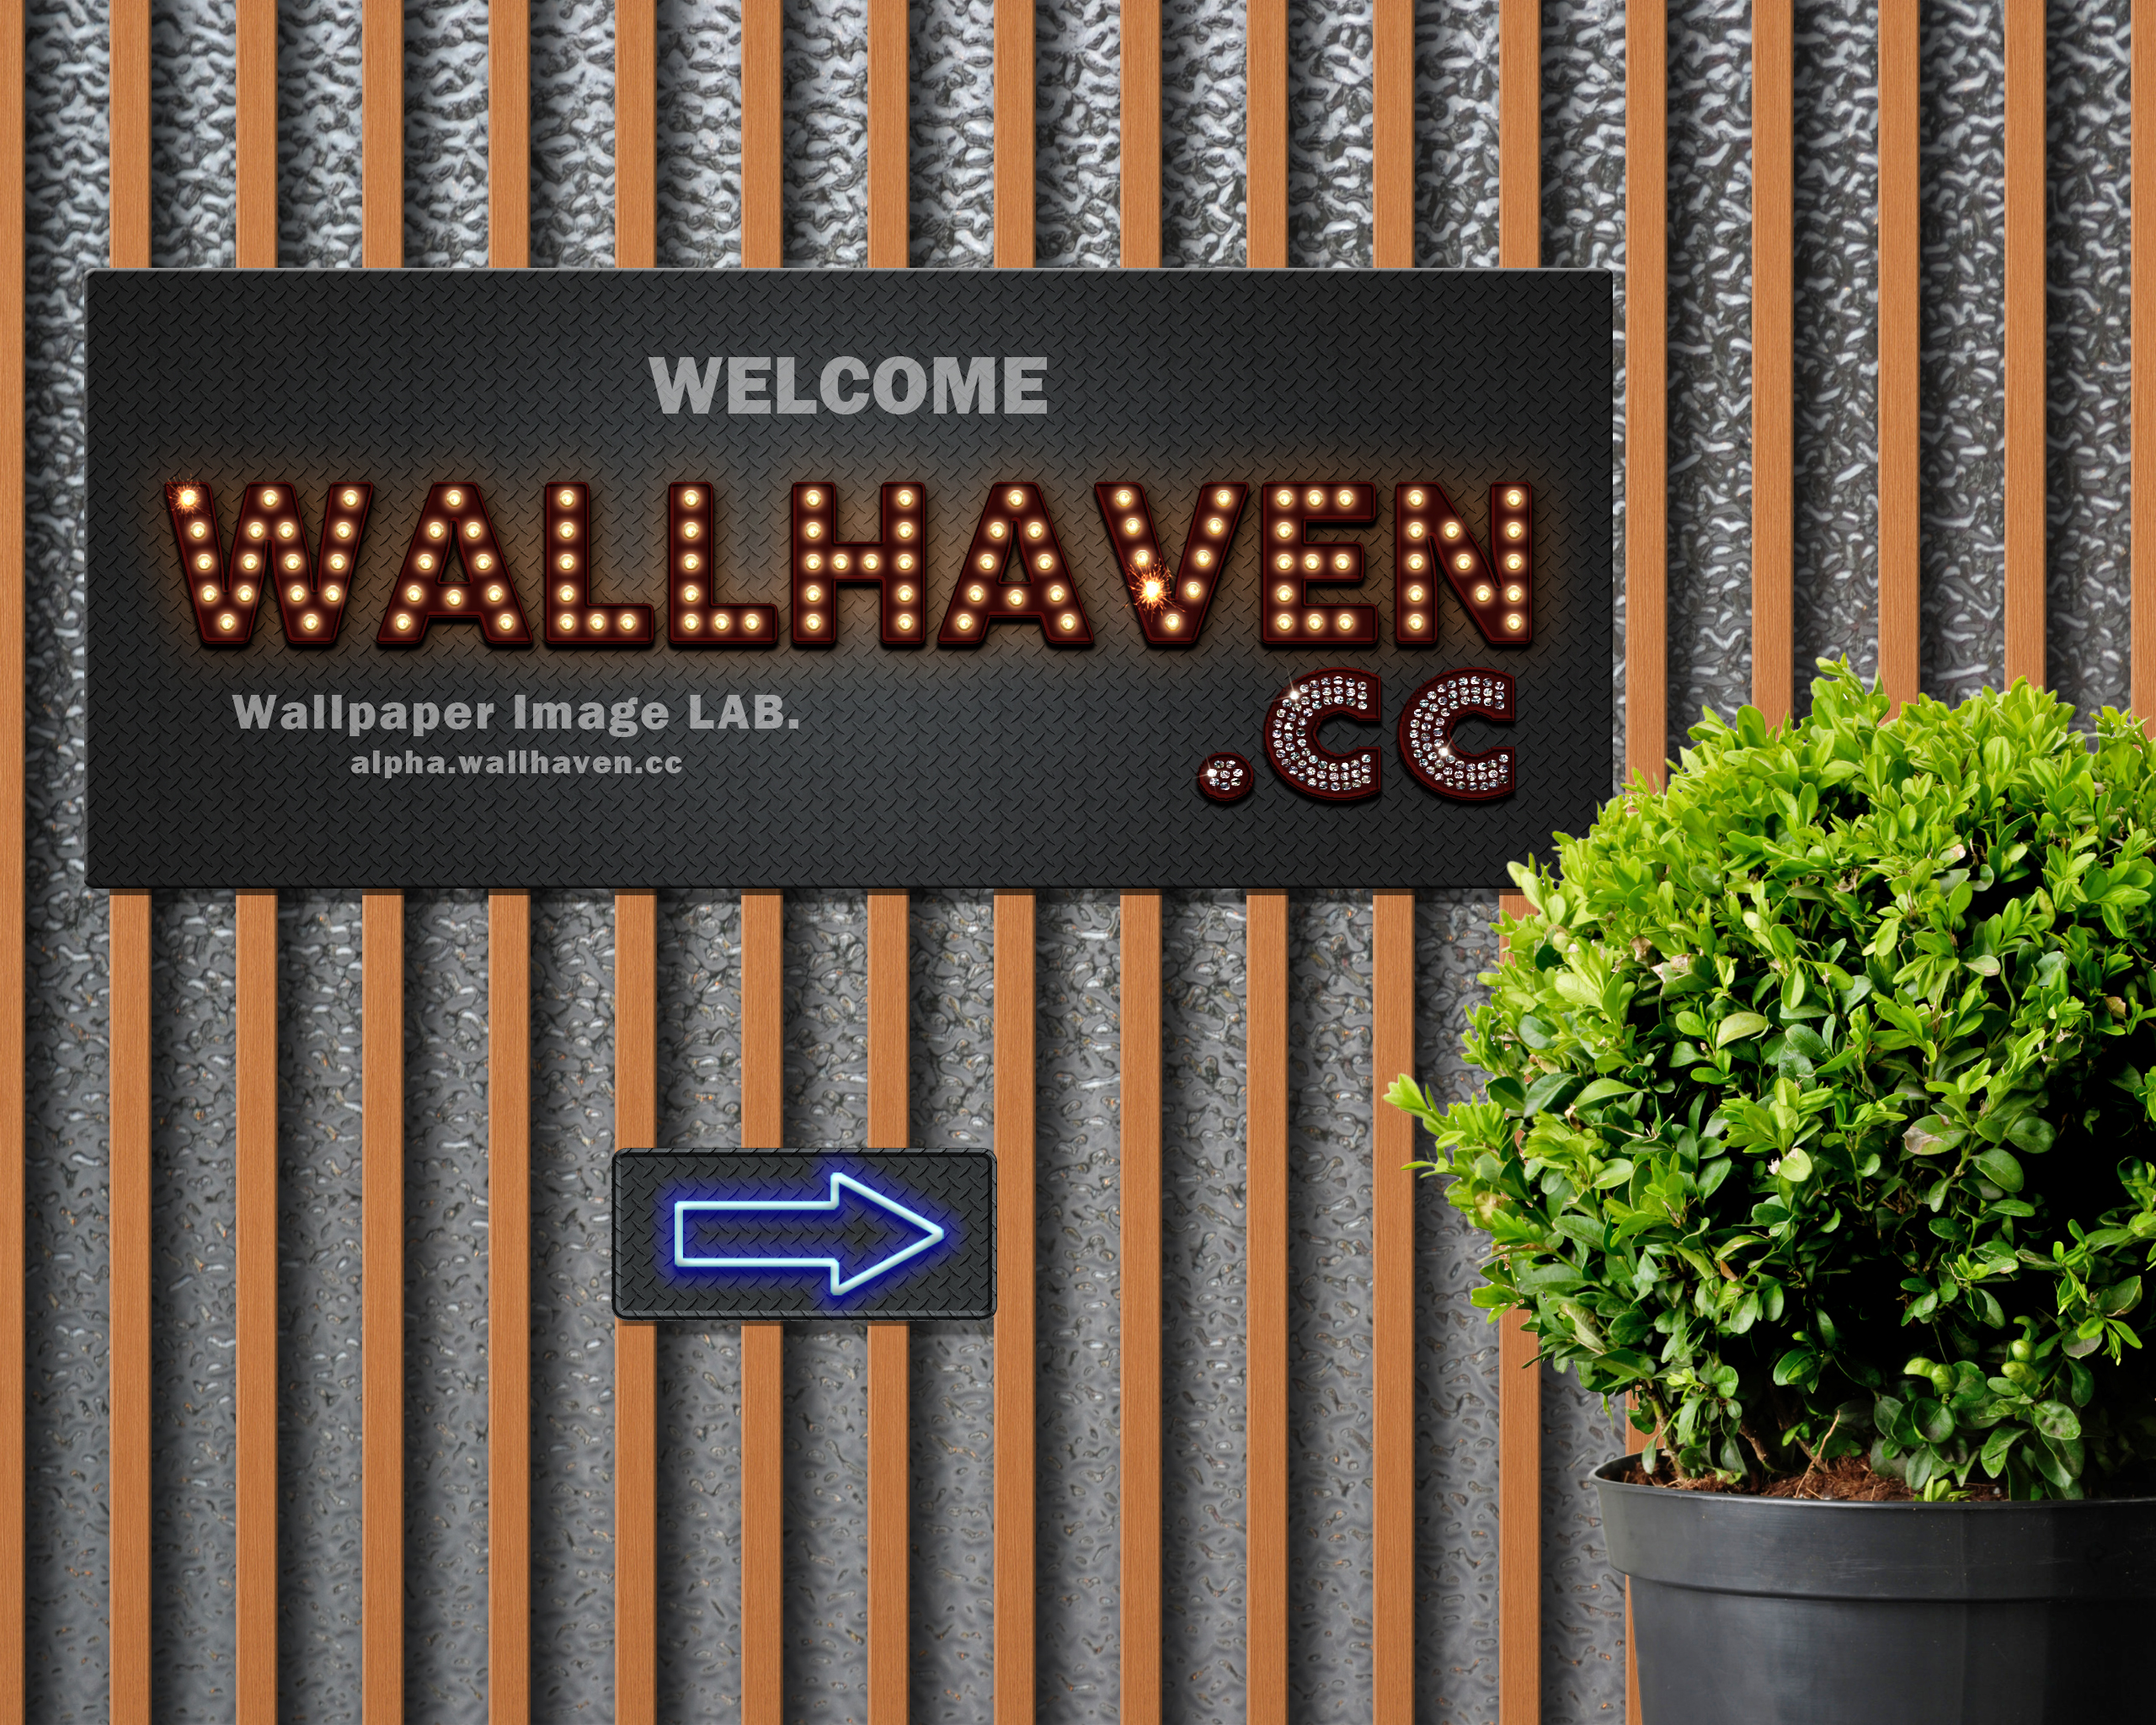 wallhaven, Sign, Neon, Lightning, Office, Glass, Window, Arrows, Plants, Digital art, Diamonds Wallpaper